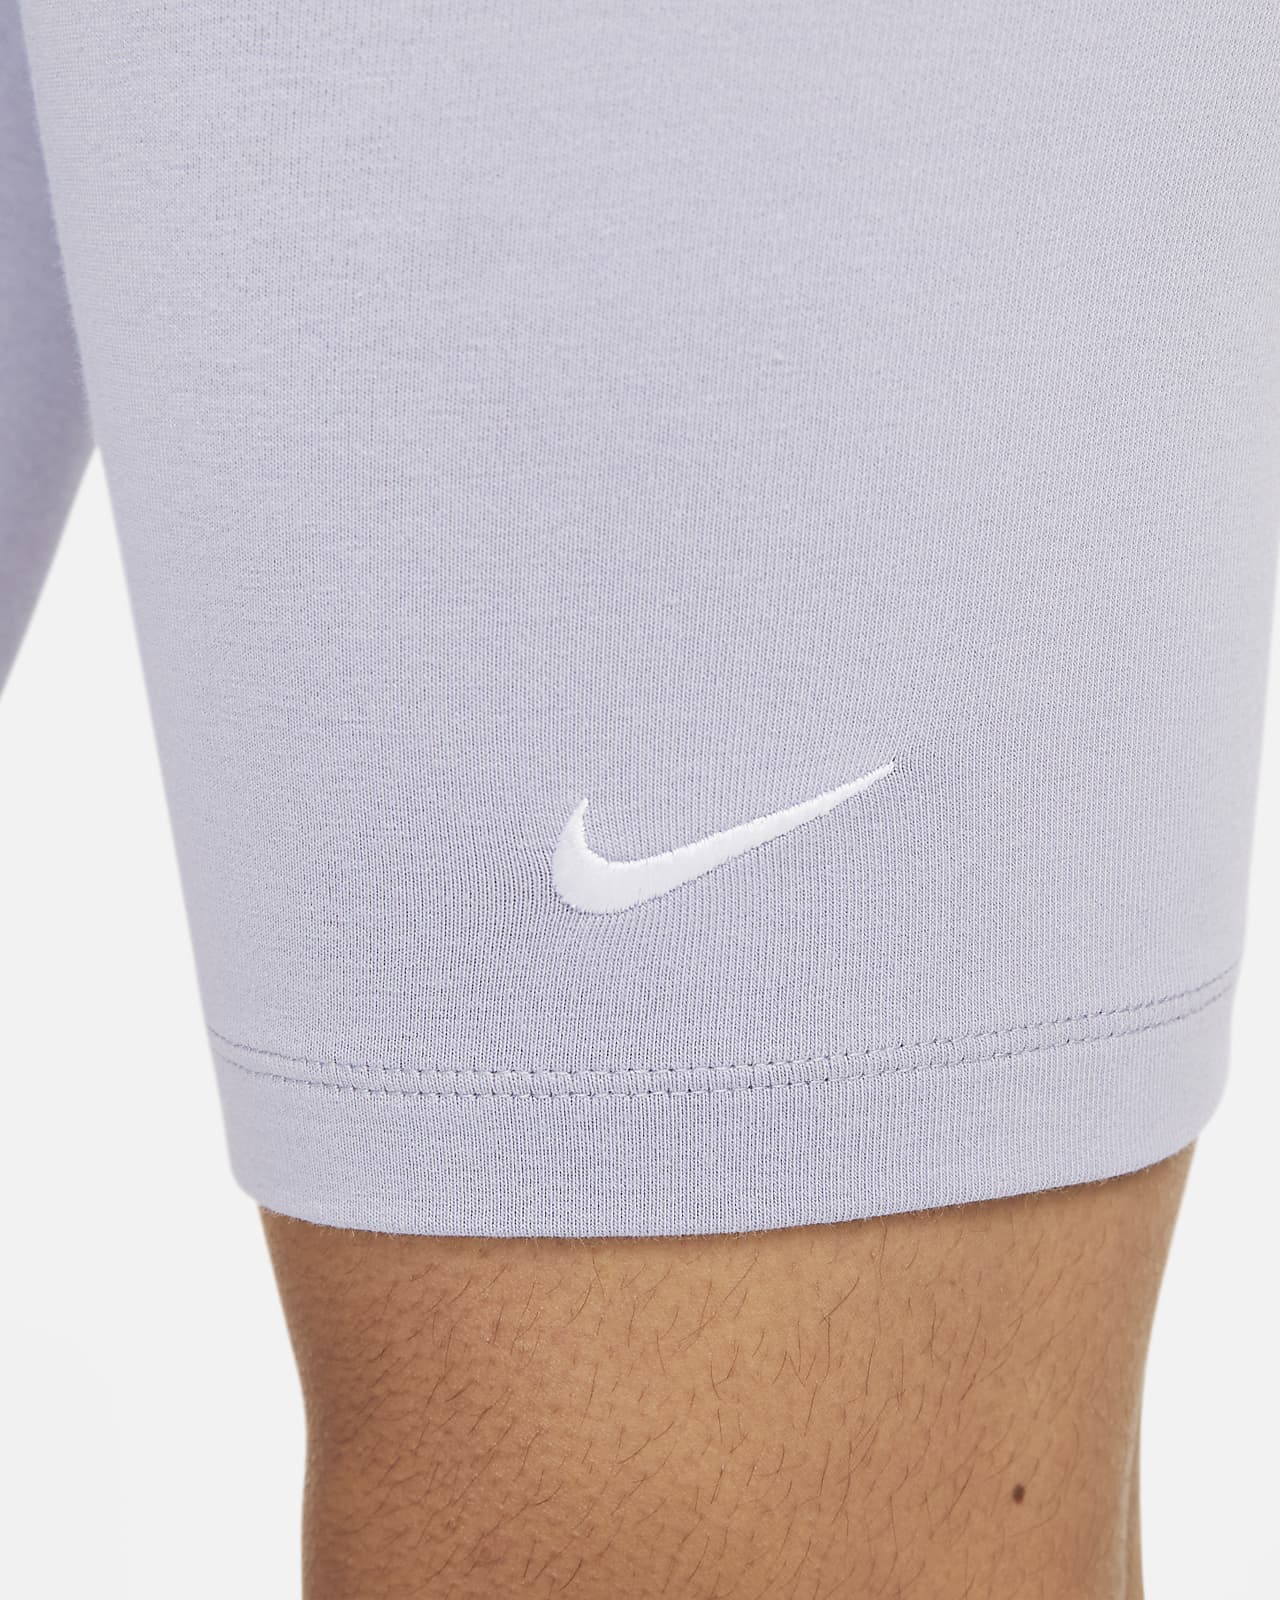 Nike Small Logo - Cinza - Calções Mulher